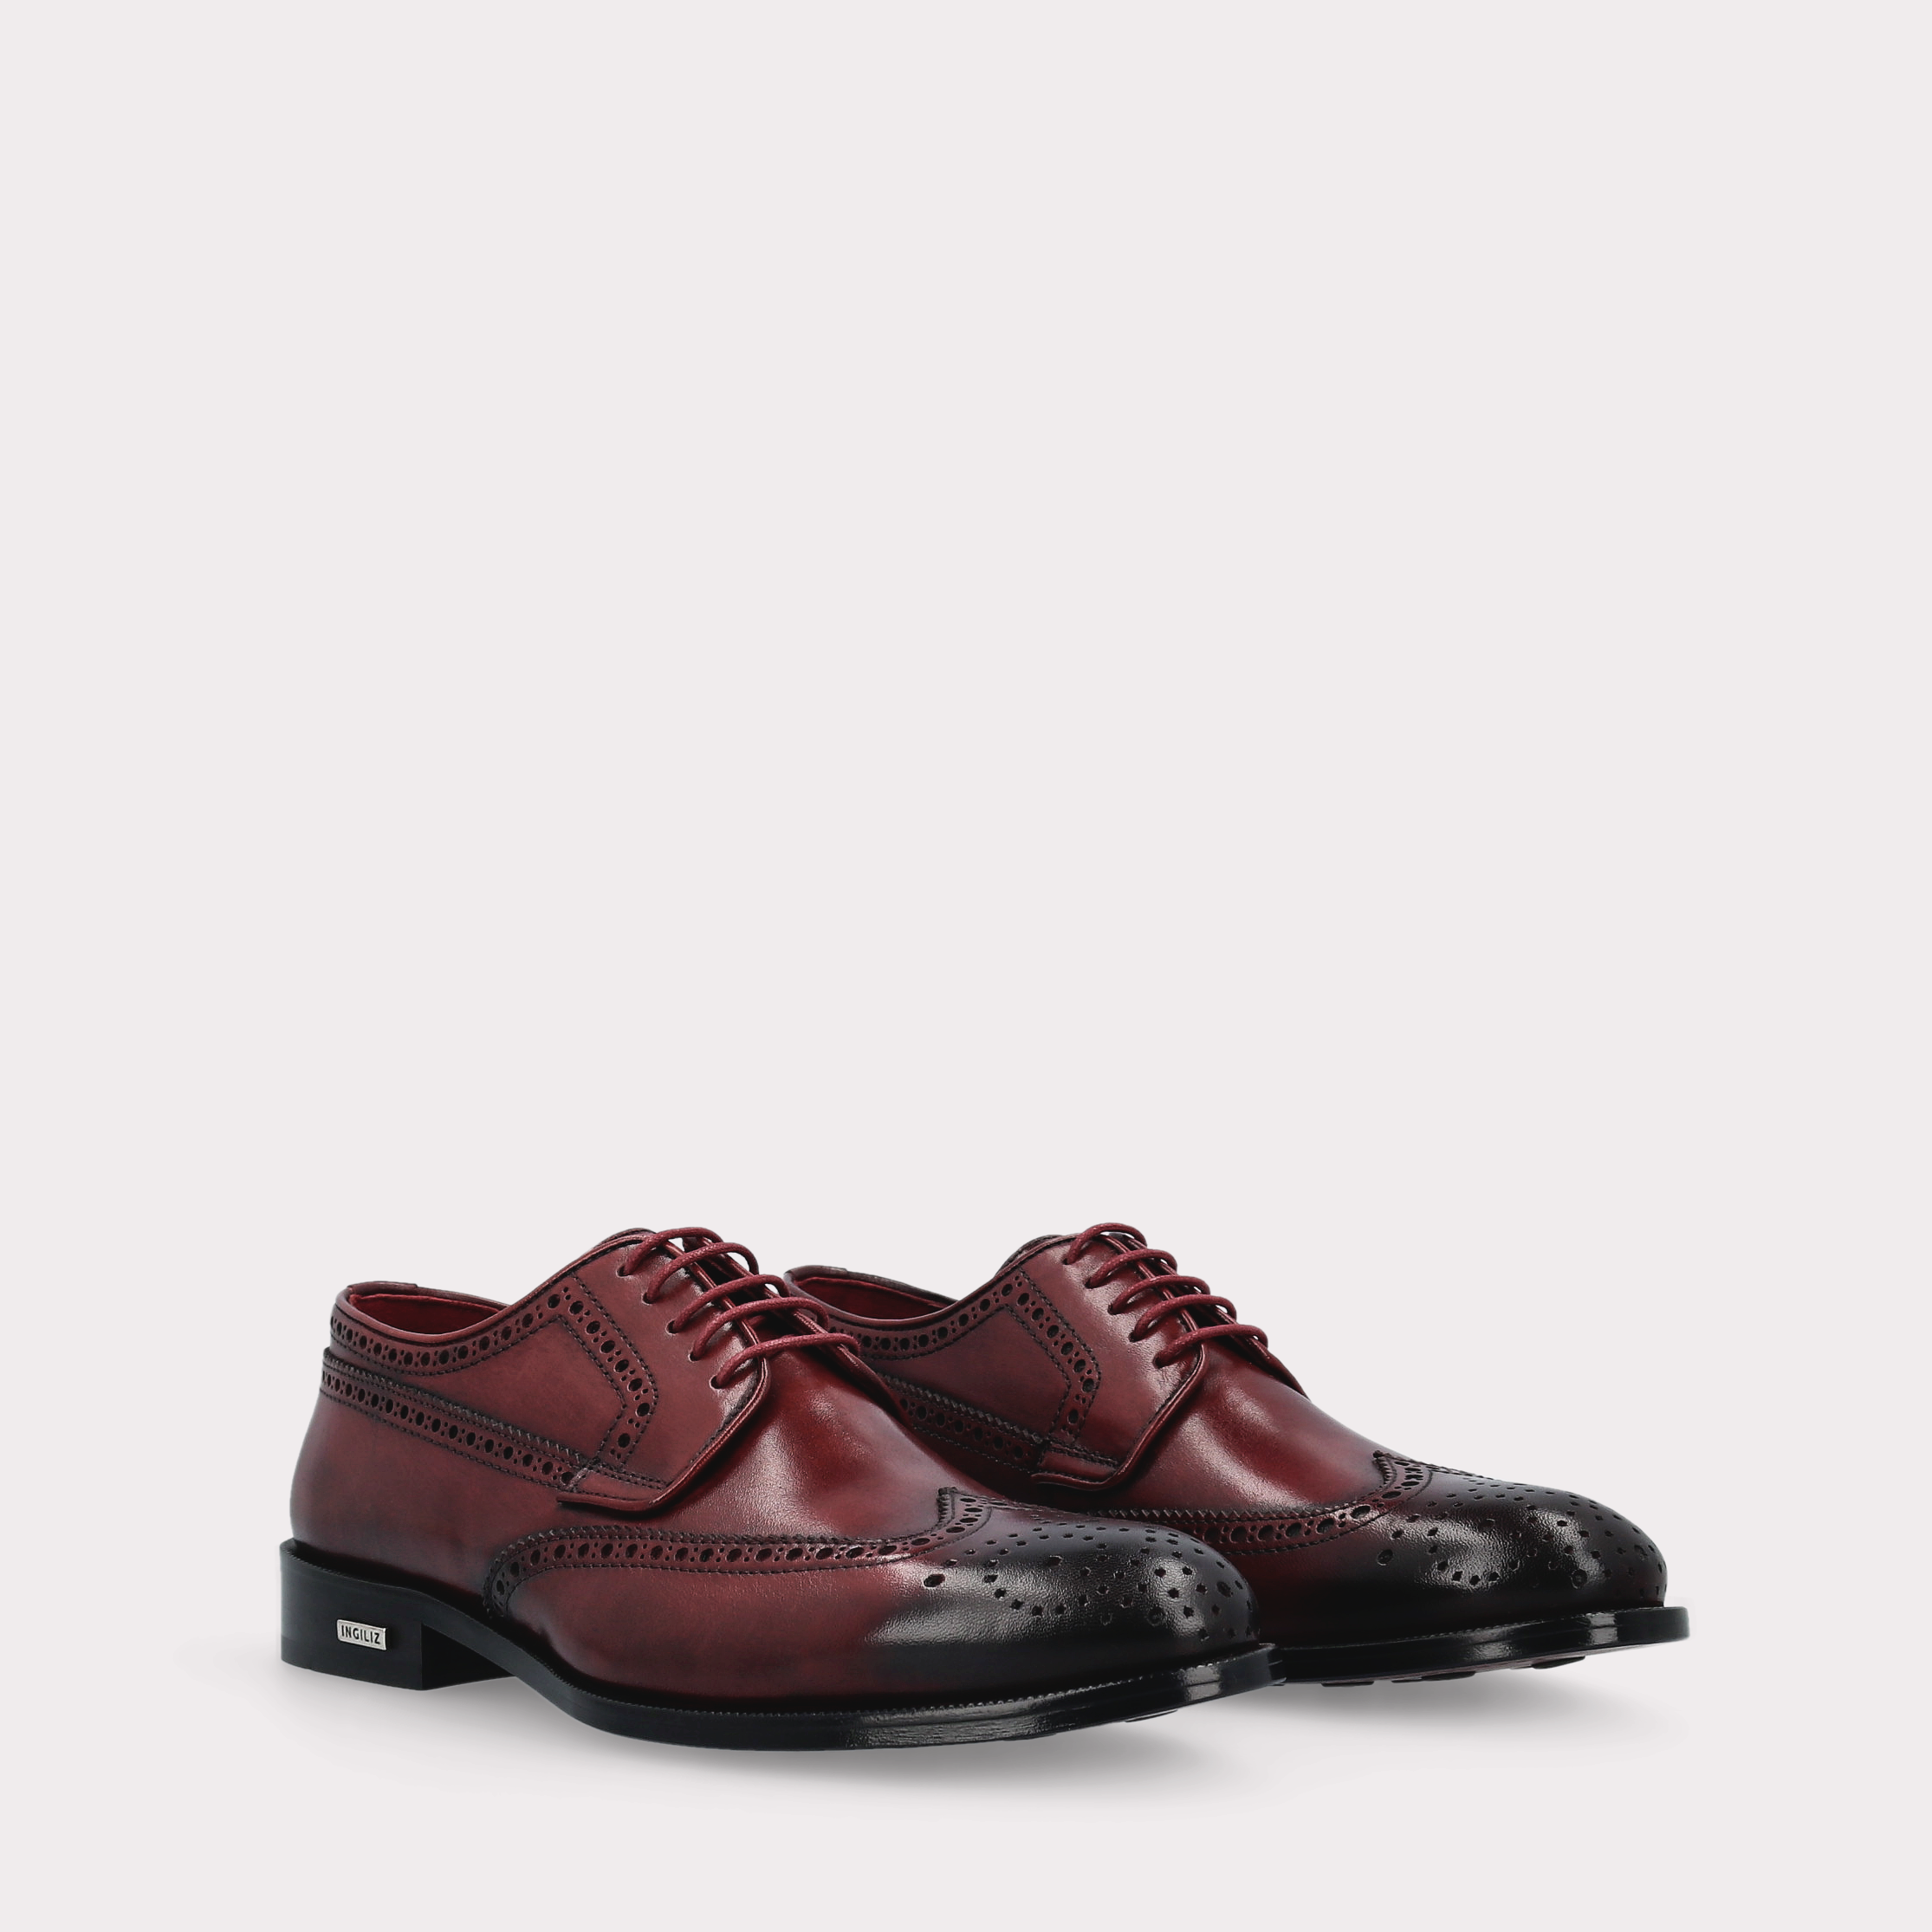 BERGAMO 01 bordeaux leather derby shoes